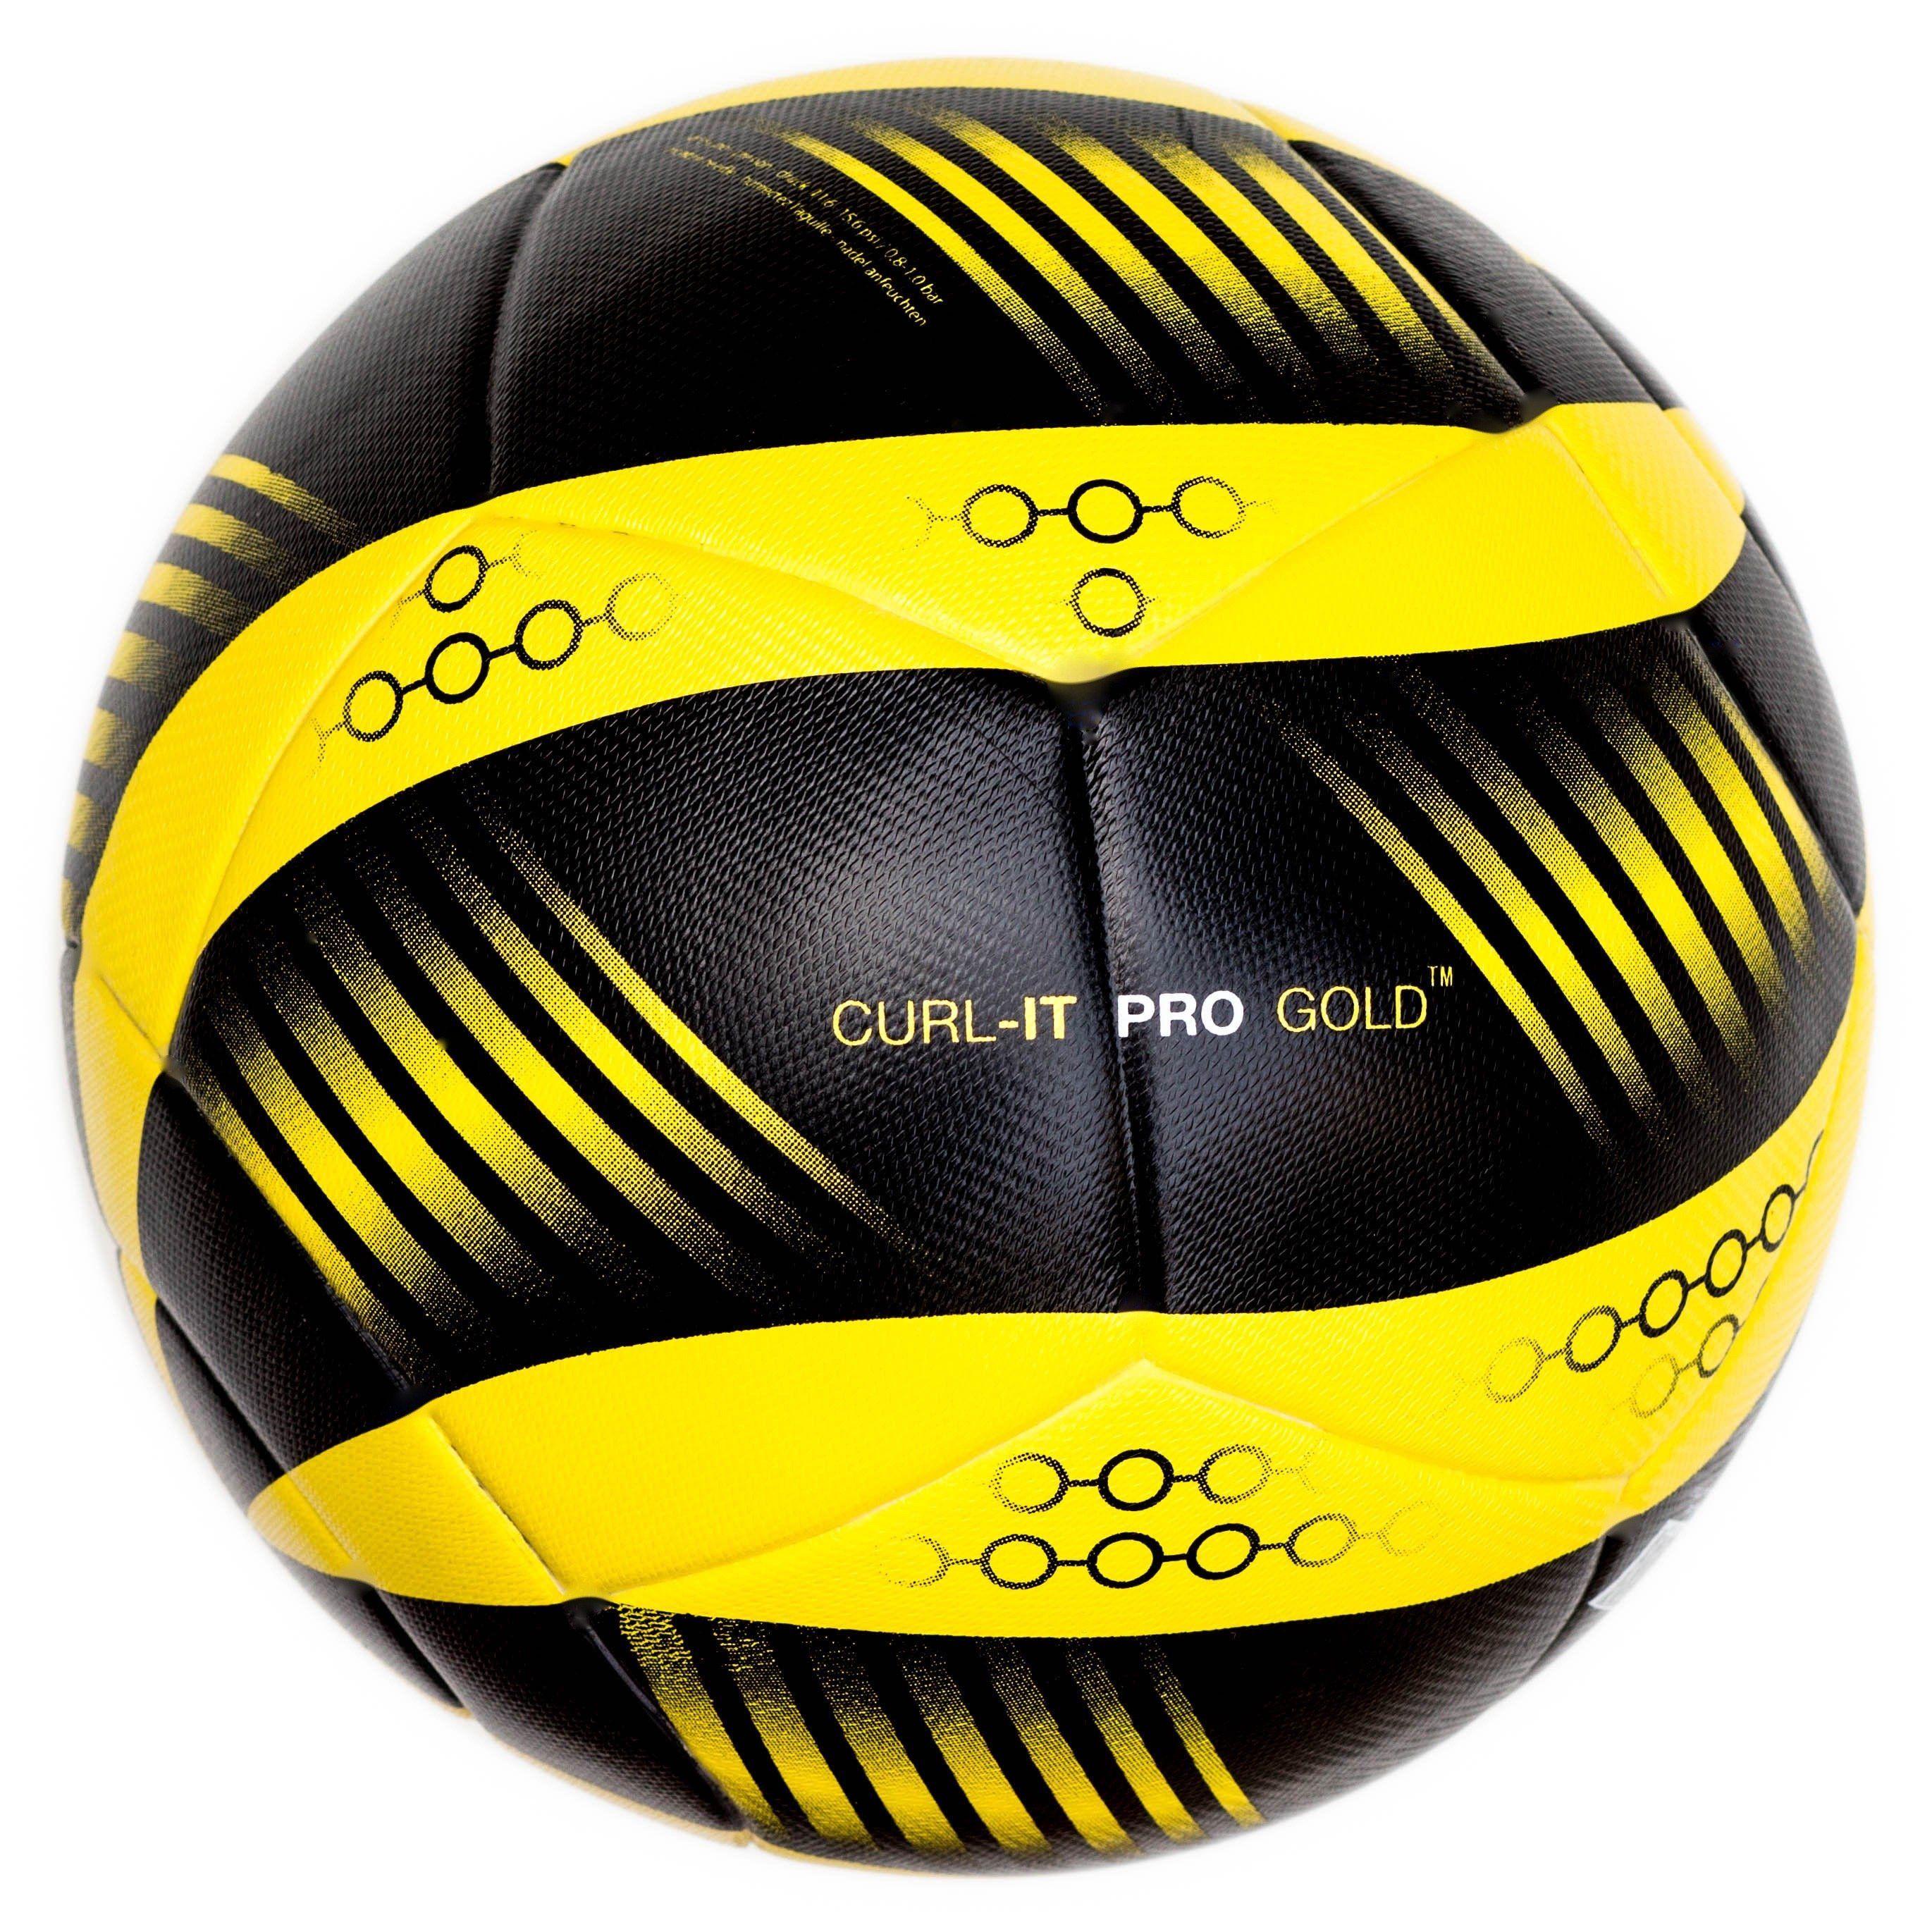 Five Ball Diadora Logo - Bend-It Soccer, Curl-It Pro Gold, Soccer Ball Size 5, Match Ball ...